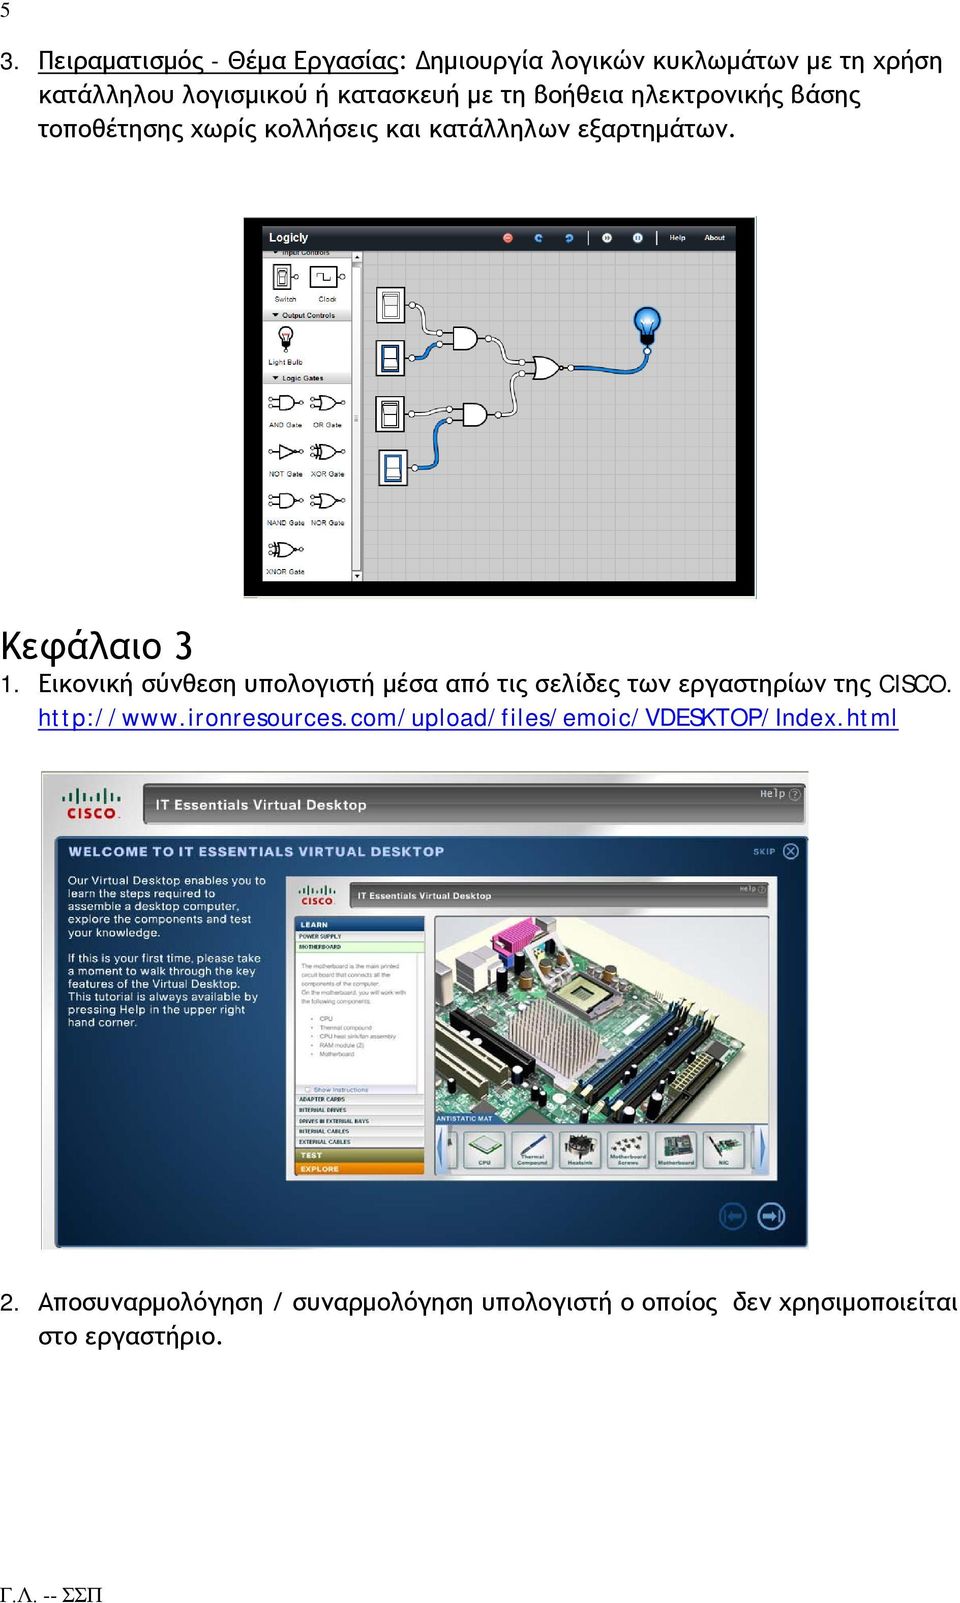 Εικονική σύνθεση υπολογιστή μέσα από τις σελίδες των εργαστηρίων της CISCO. http://www.ironresources.